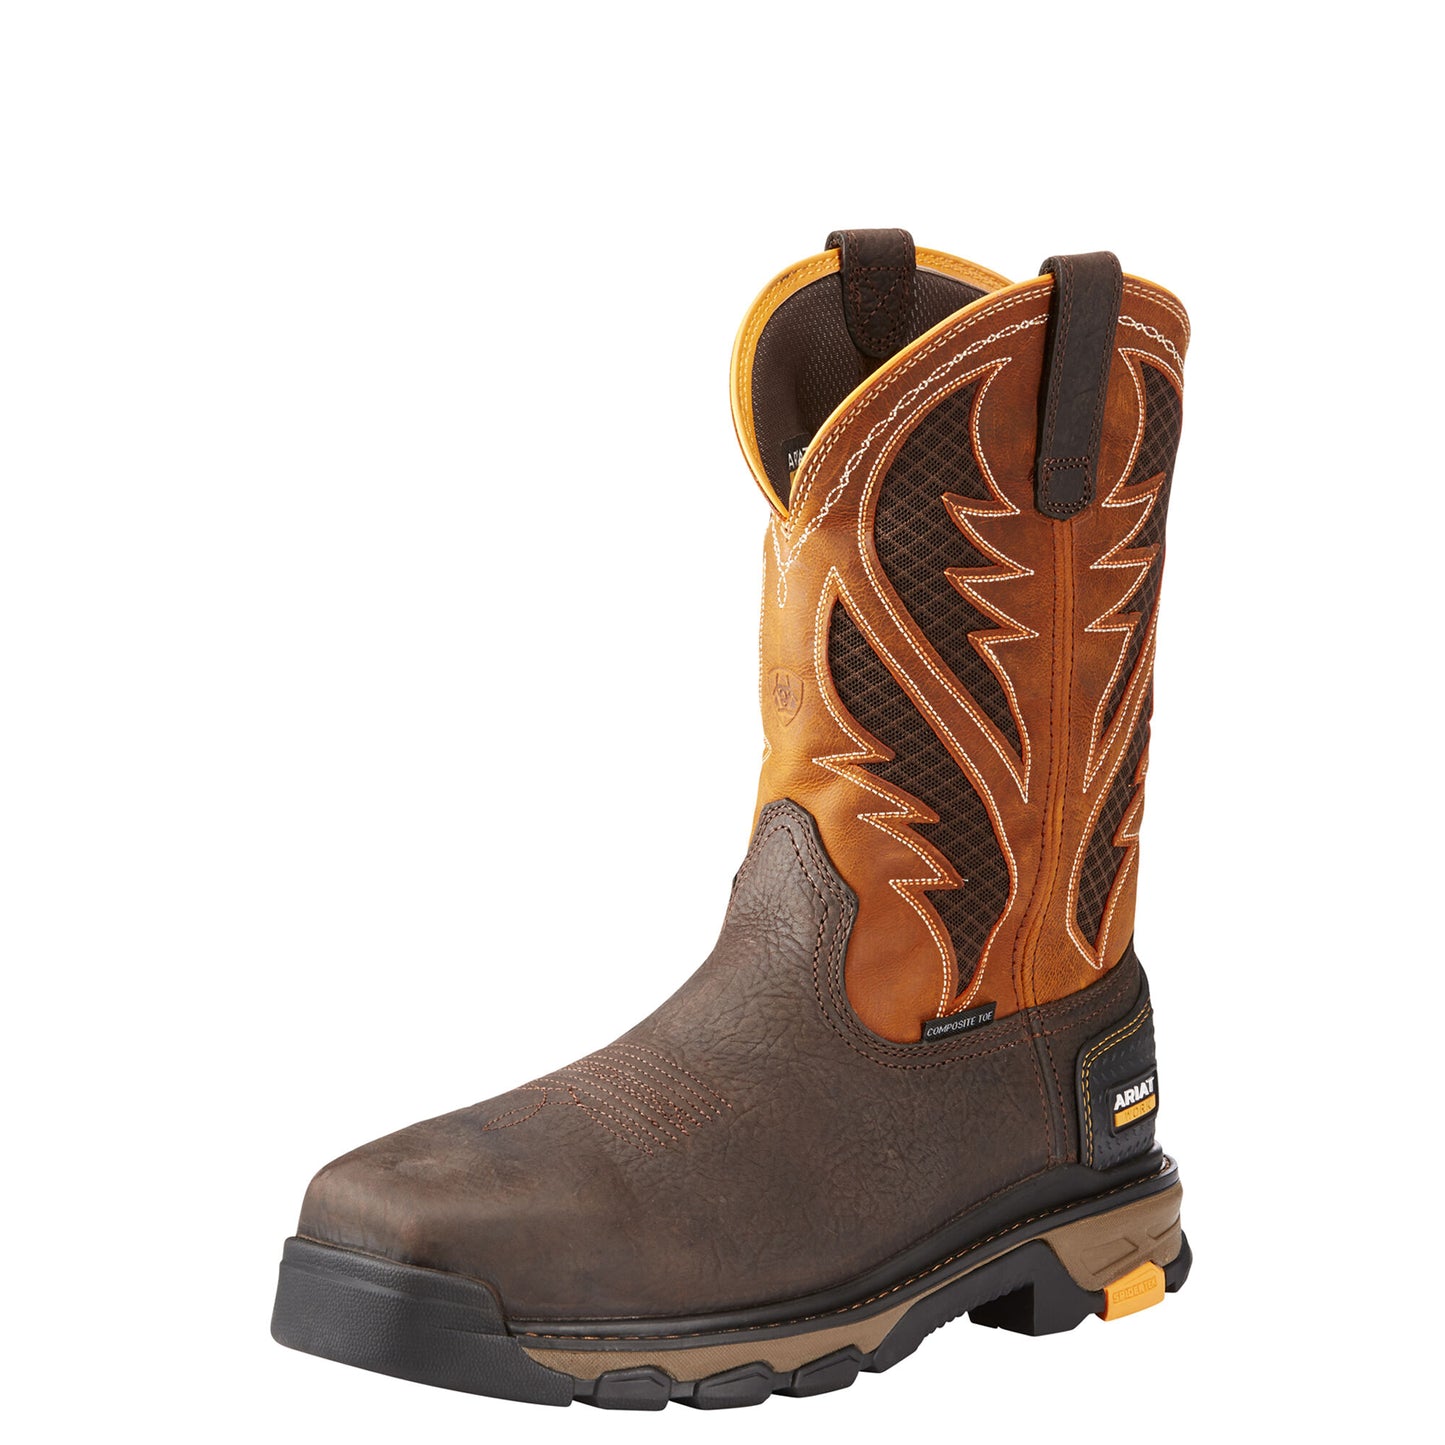 Ariat Men's Intrepid VentTek Composite Toe Boot - Bruin Brown/Orange - French's Boots